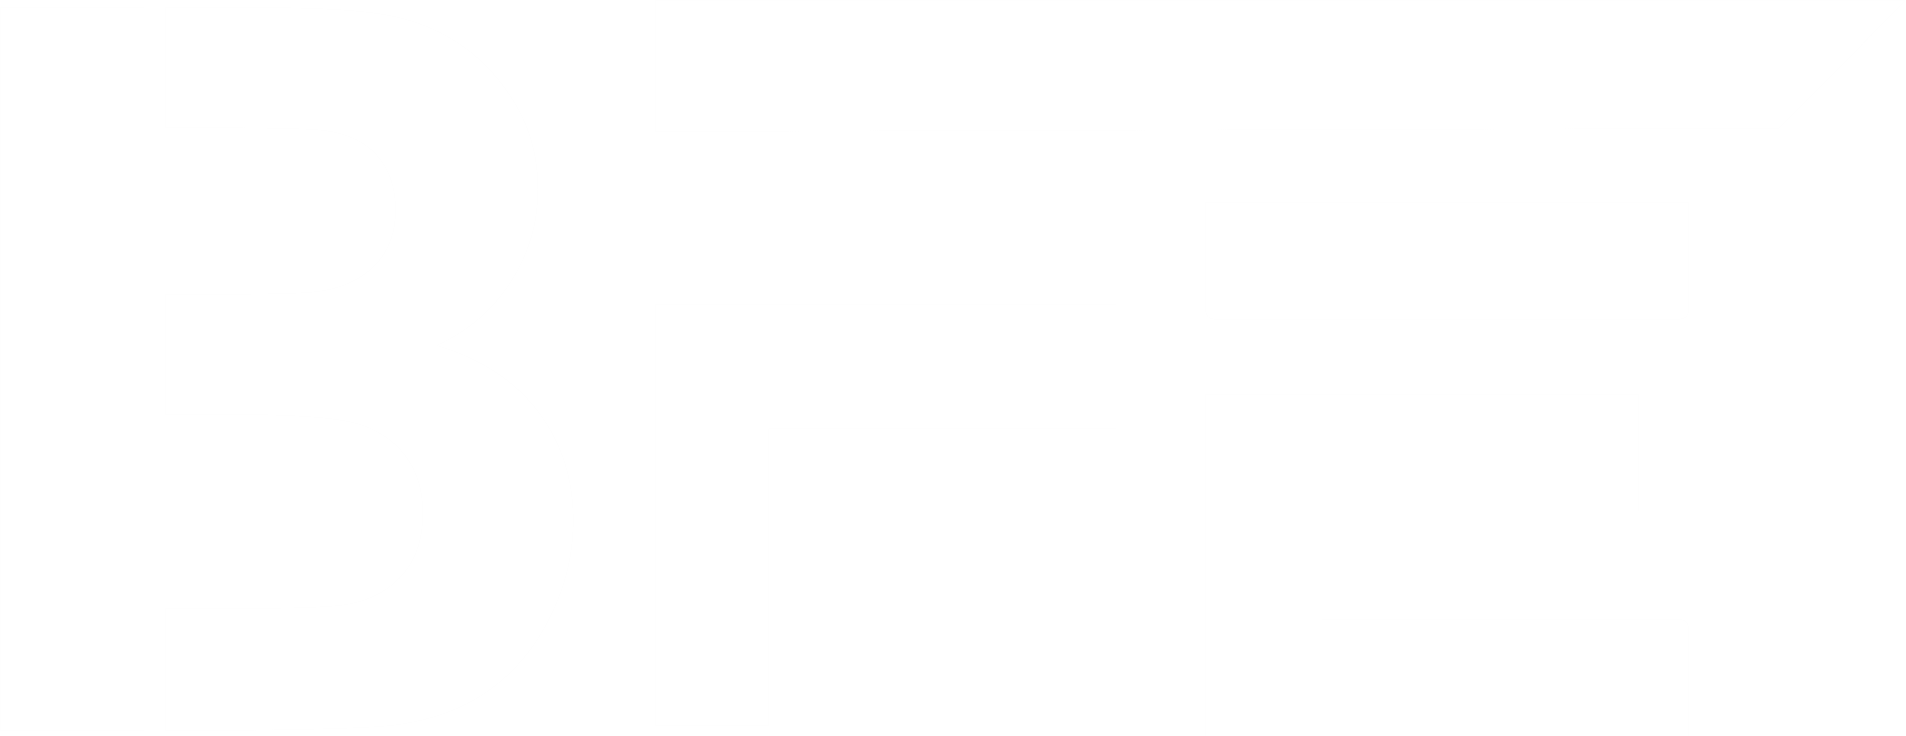 BFE-led-logo